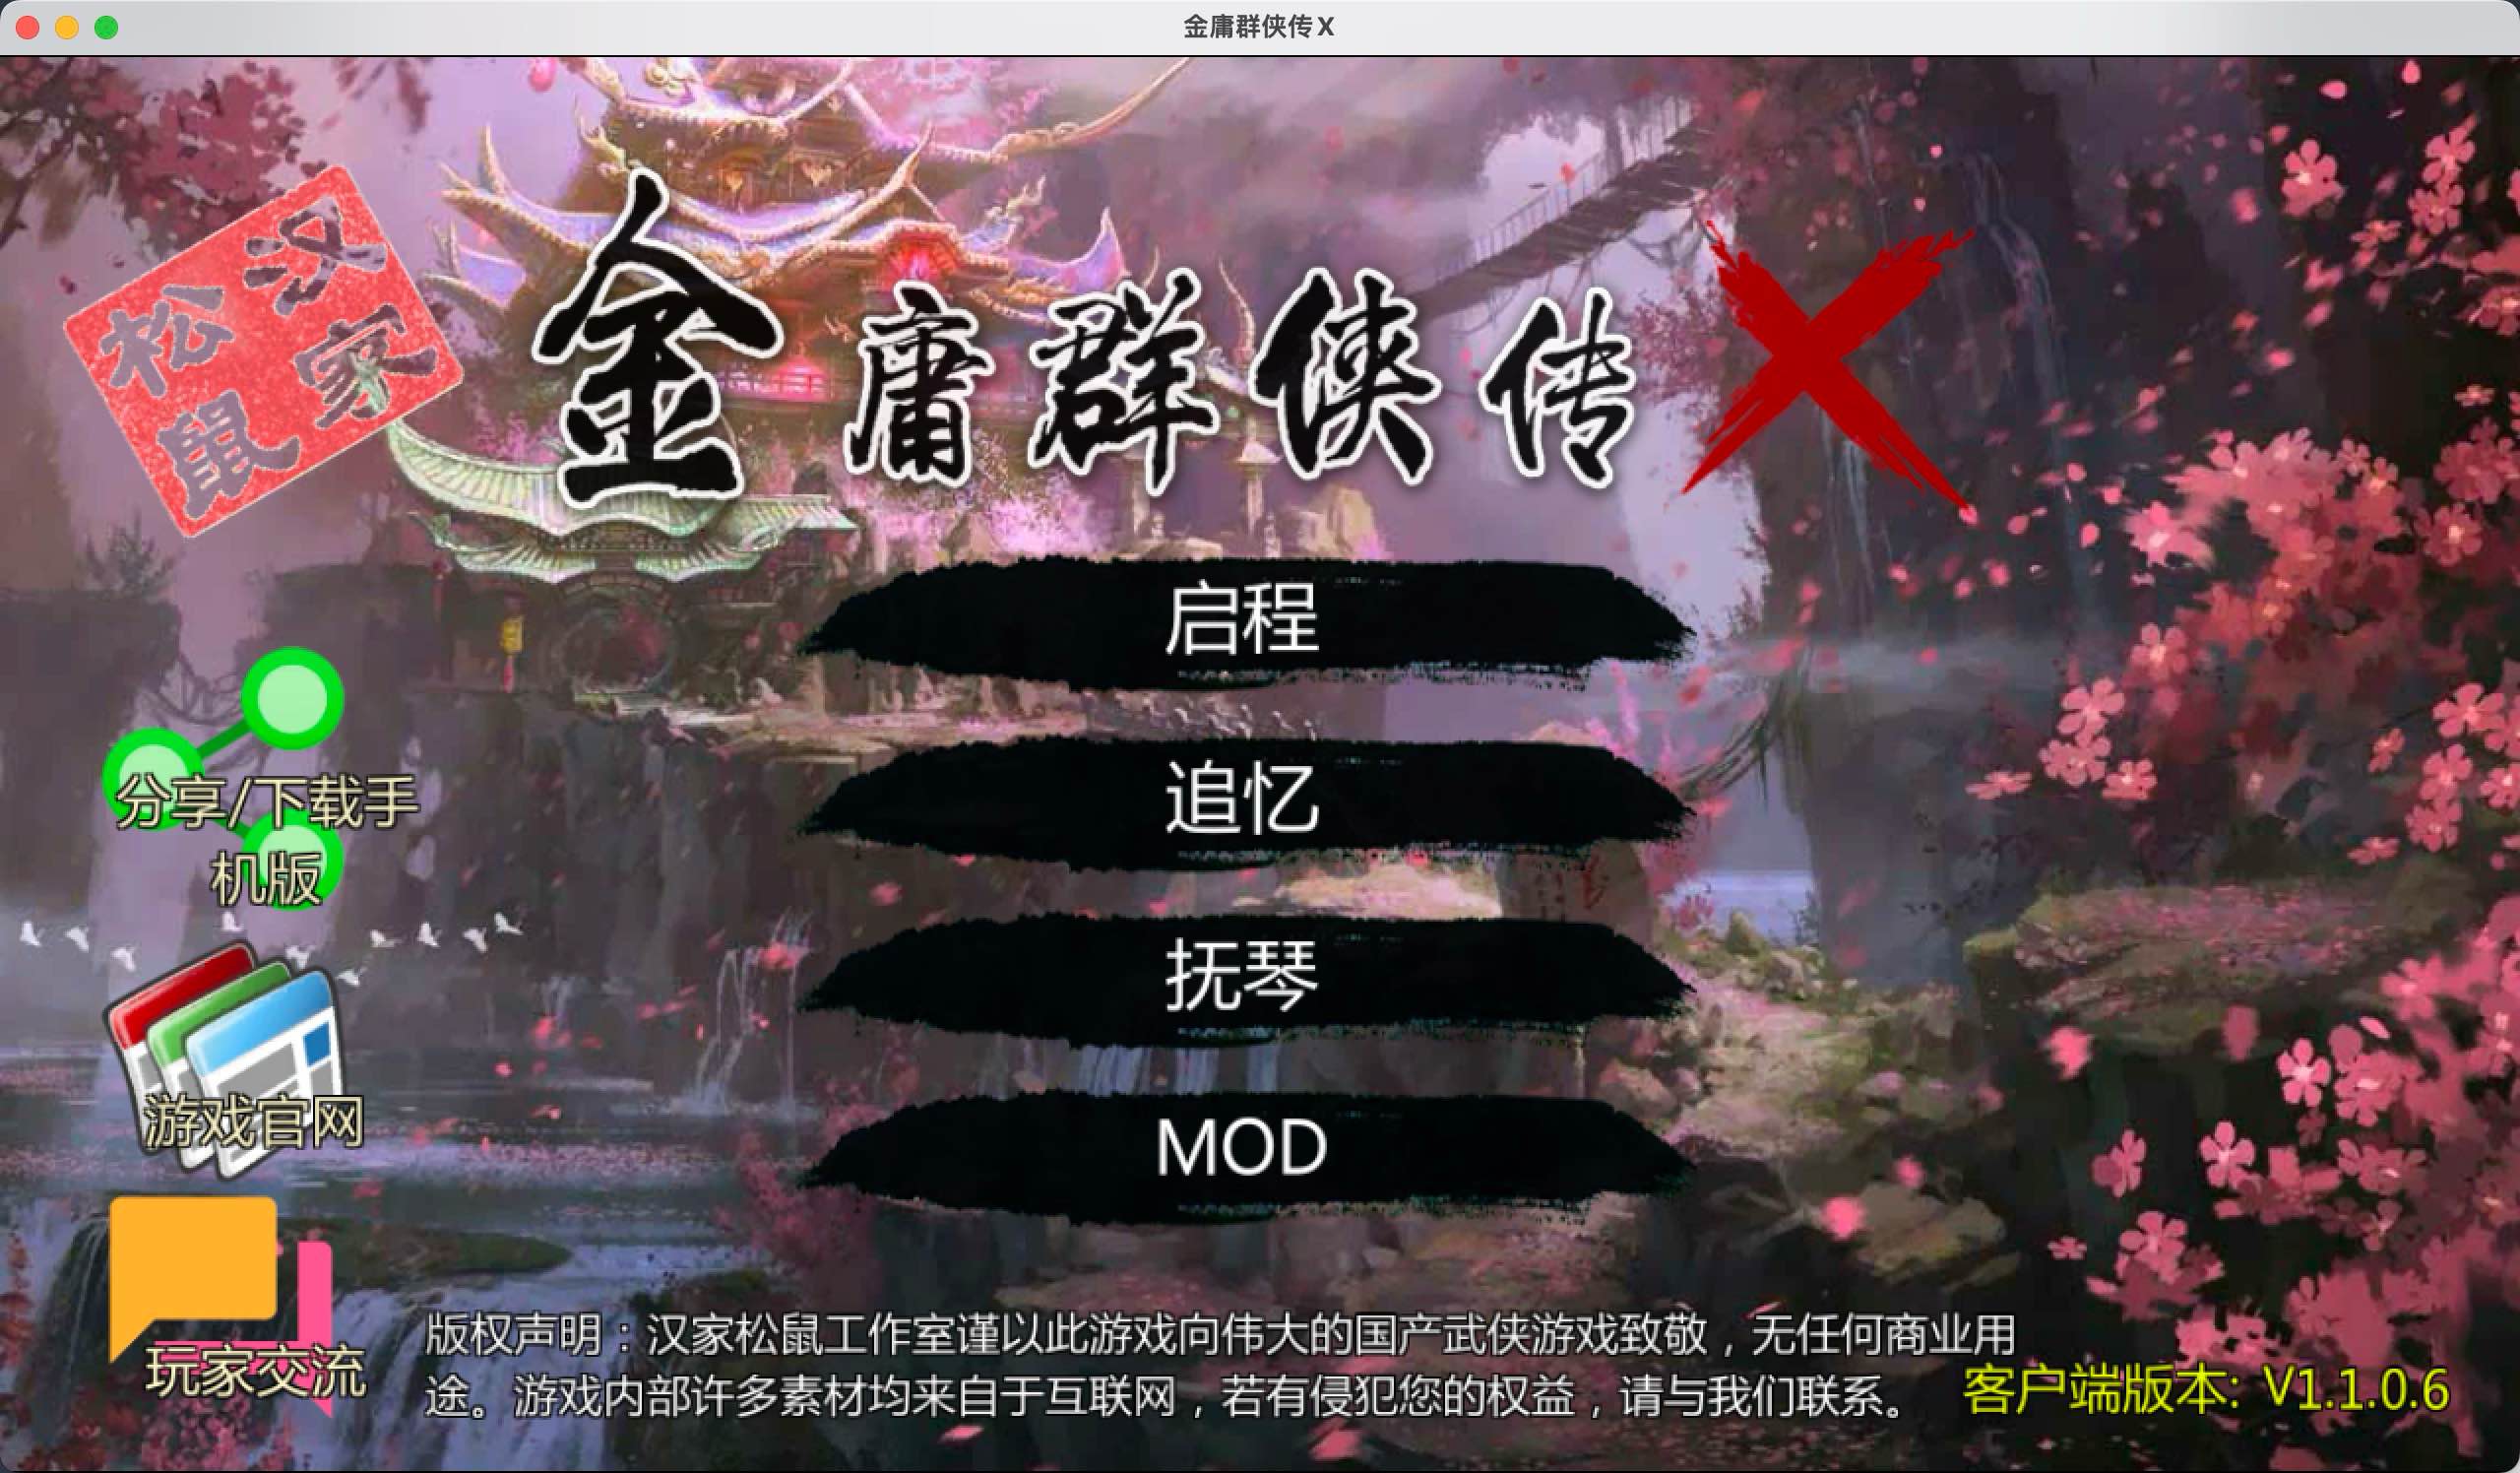 金庸群侠传X for Mac v1.1.0.6 中文移植版 苹果电脑